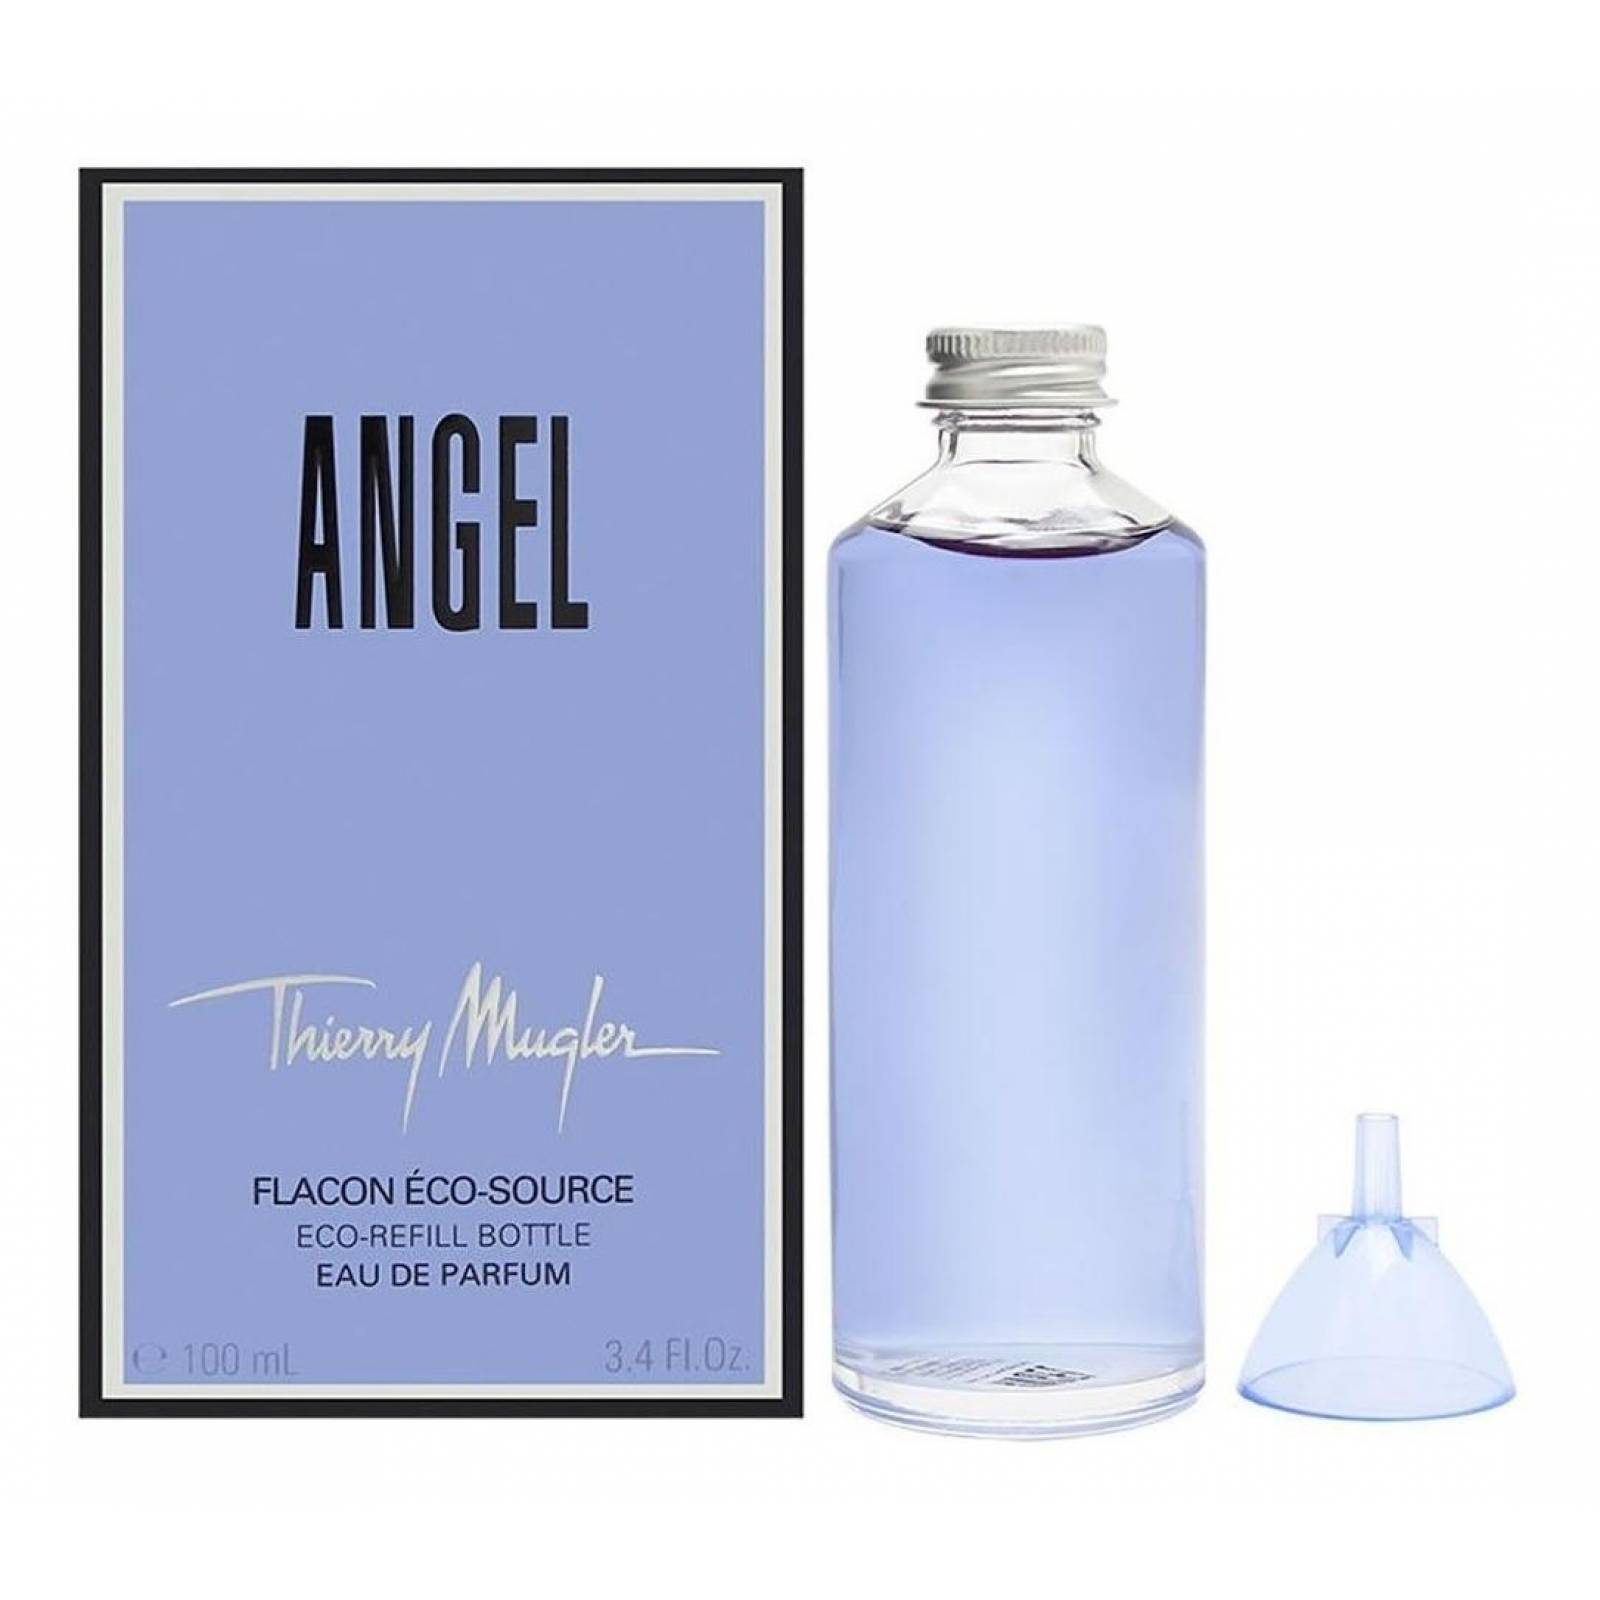 Loción Angel Refill Bottles De Thierry Mugler Edp 100 Ml